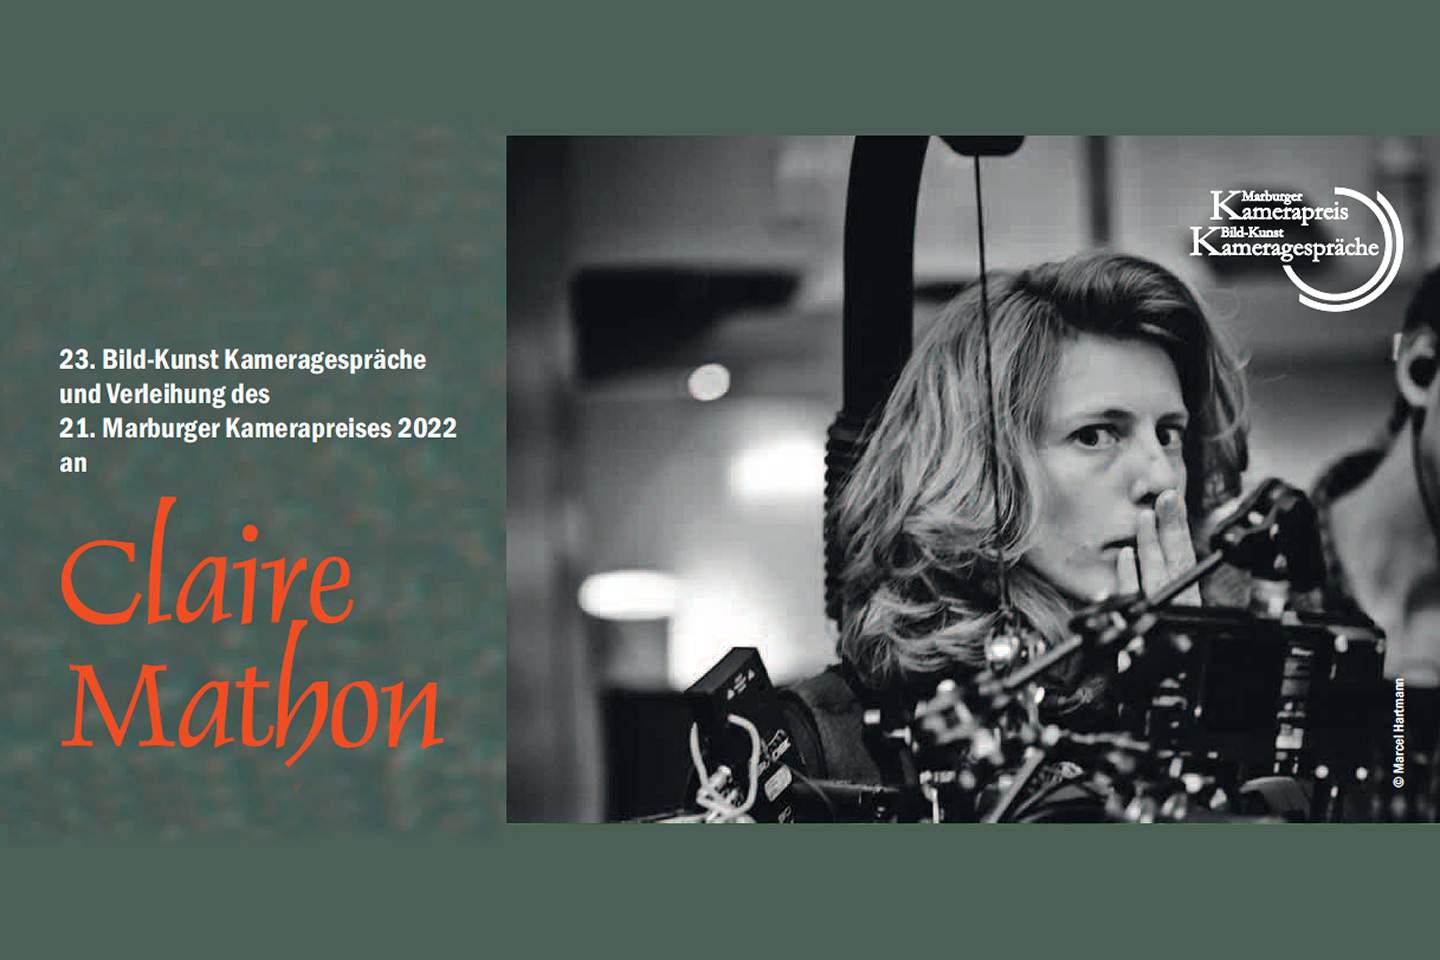 Le "Marburger Kamerapreis" 2022 attribué à Claire Mathon, AFC